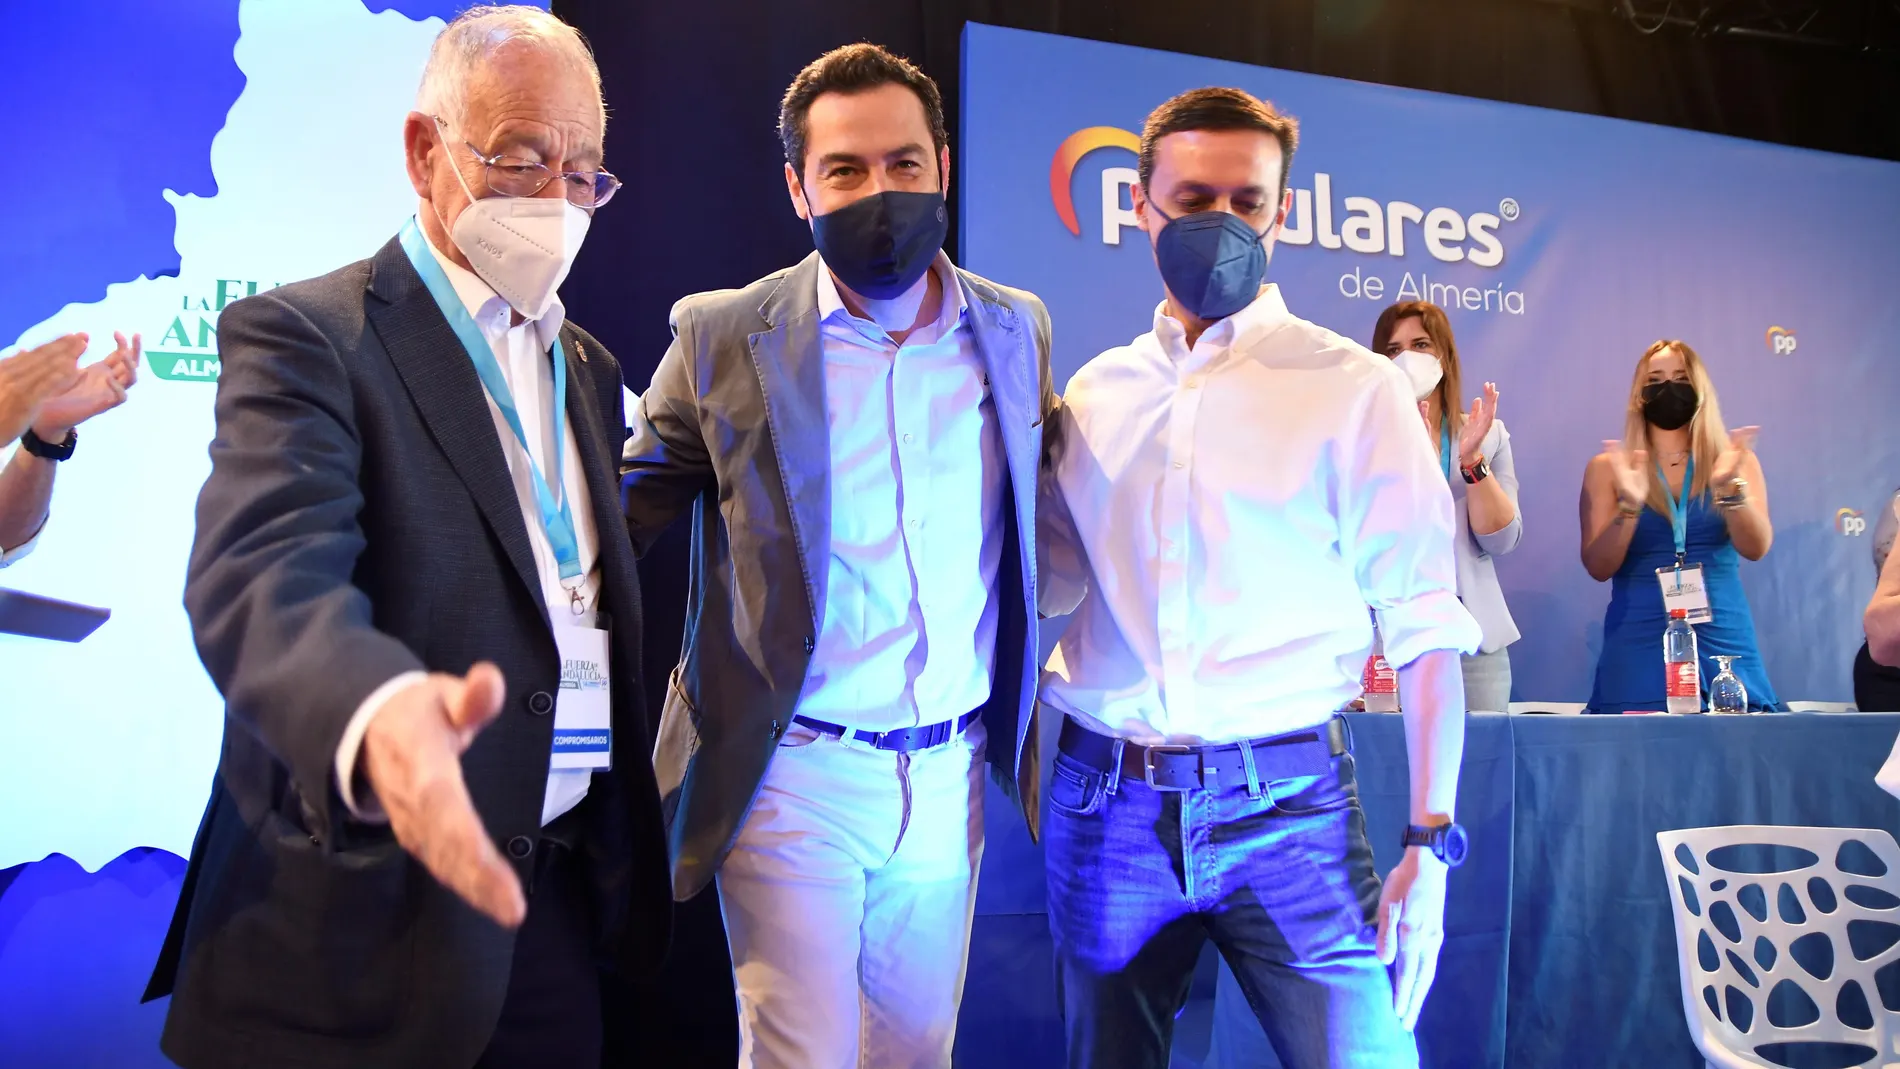 El presidente del PP andaluz y de la Junta, Juanma Moreno (c), junto al nuevo presidente del Partido Popular en Almería, Javier Aureliano García (dcha), y el presidente saliente, Gabriel Amat